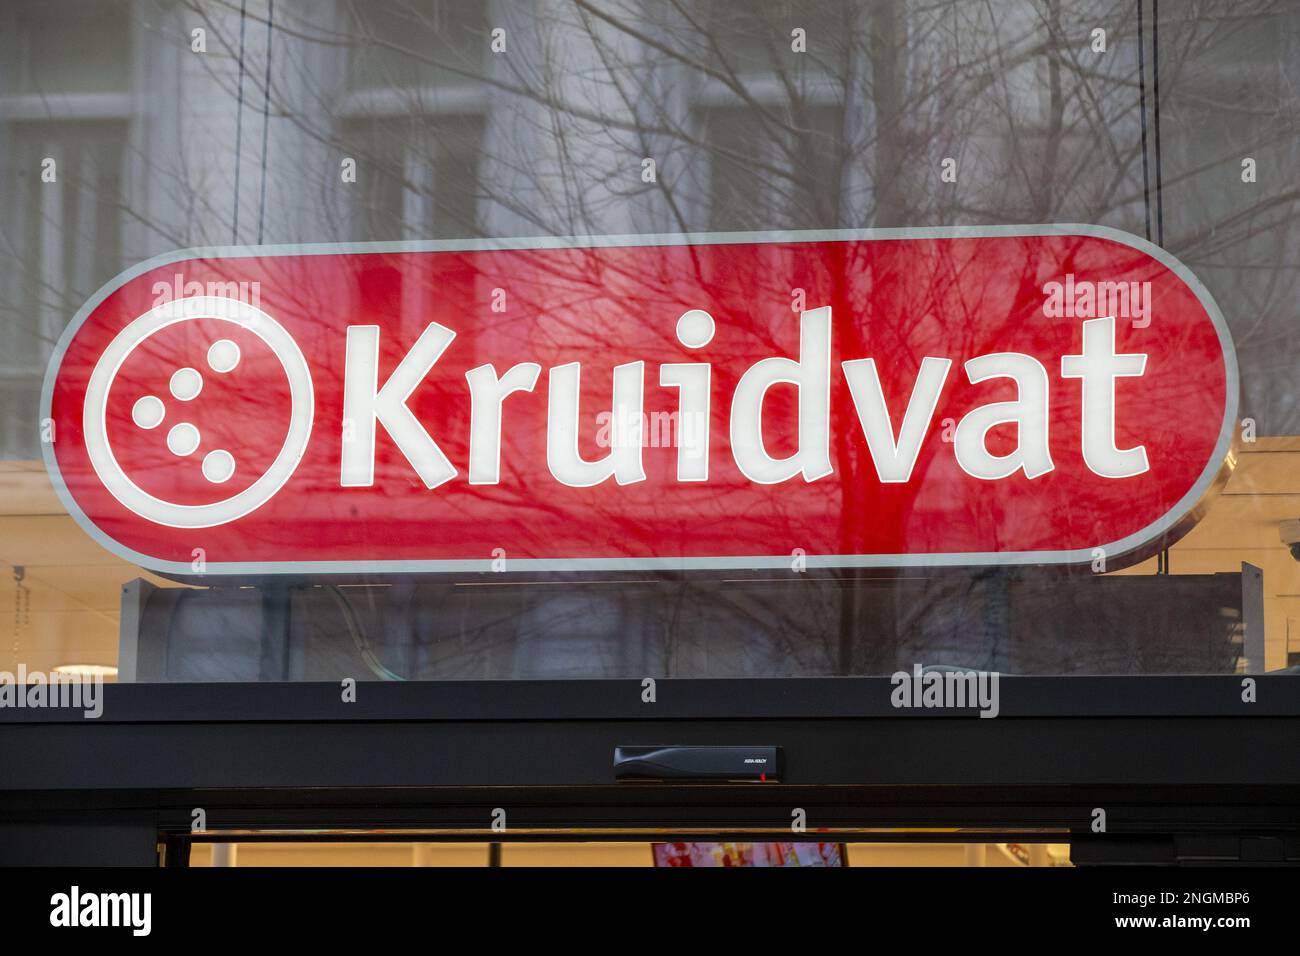 L'illustration montre le logo de Kruidvat sur une boutique dans le quartier de Brouckere place - Brouckereplein dans le centre de Bruxelles, samedi 18 février 2023. BELGA PHOTO NICOLAS MATERLINCK Banque D'Images